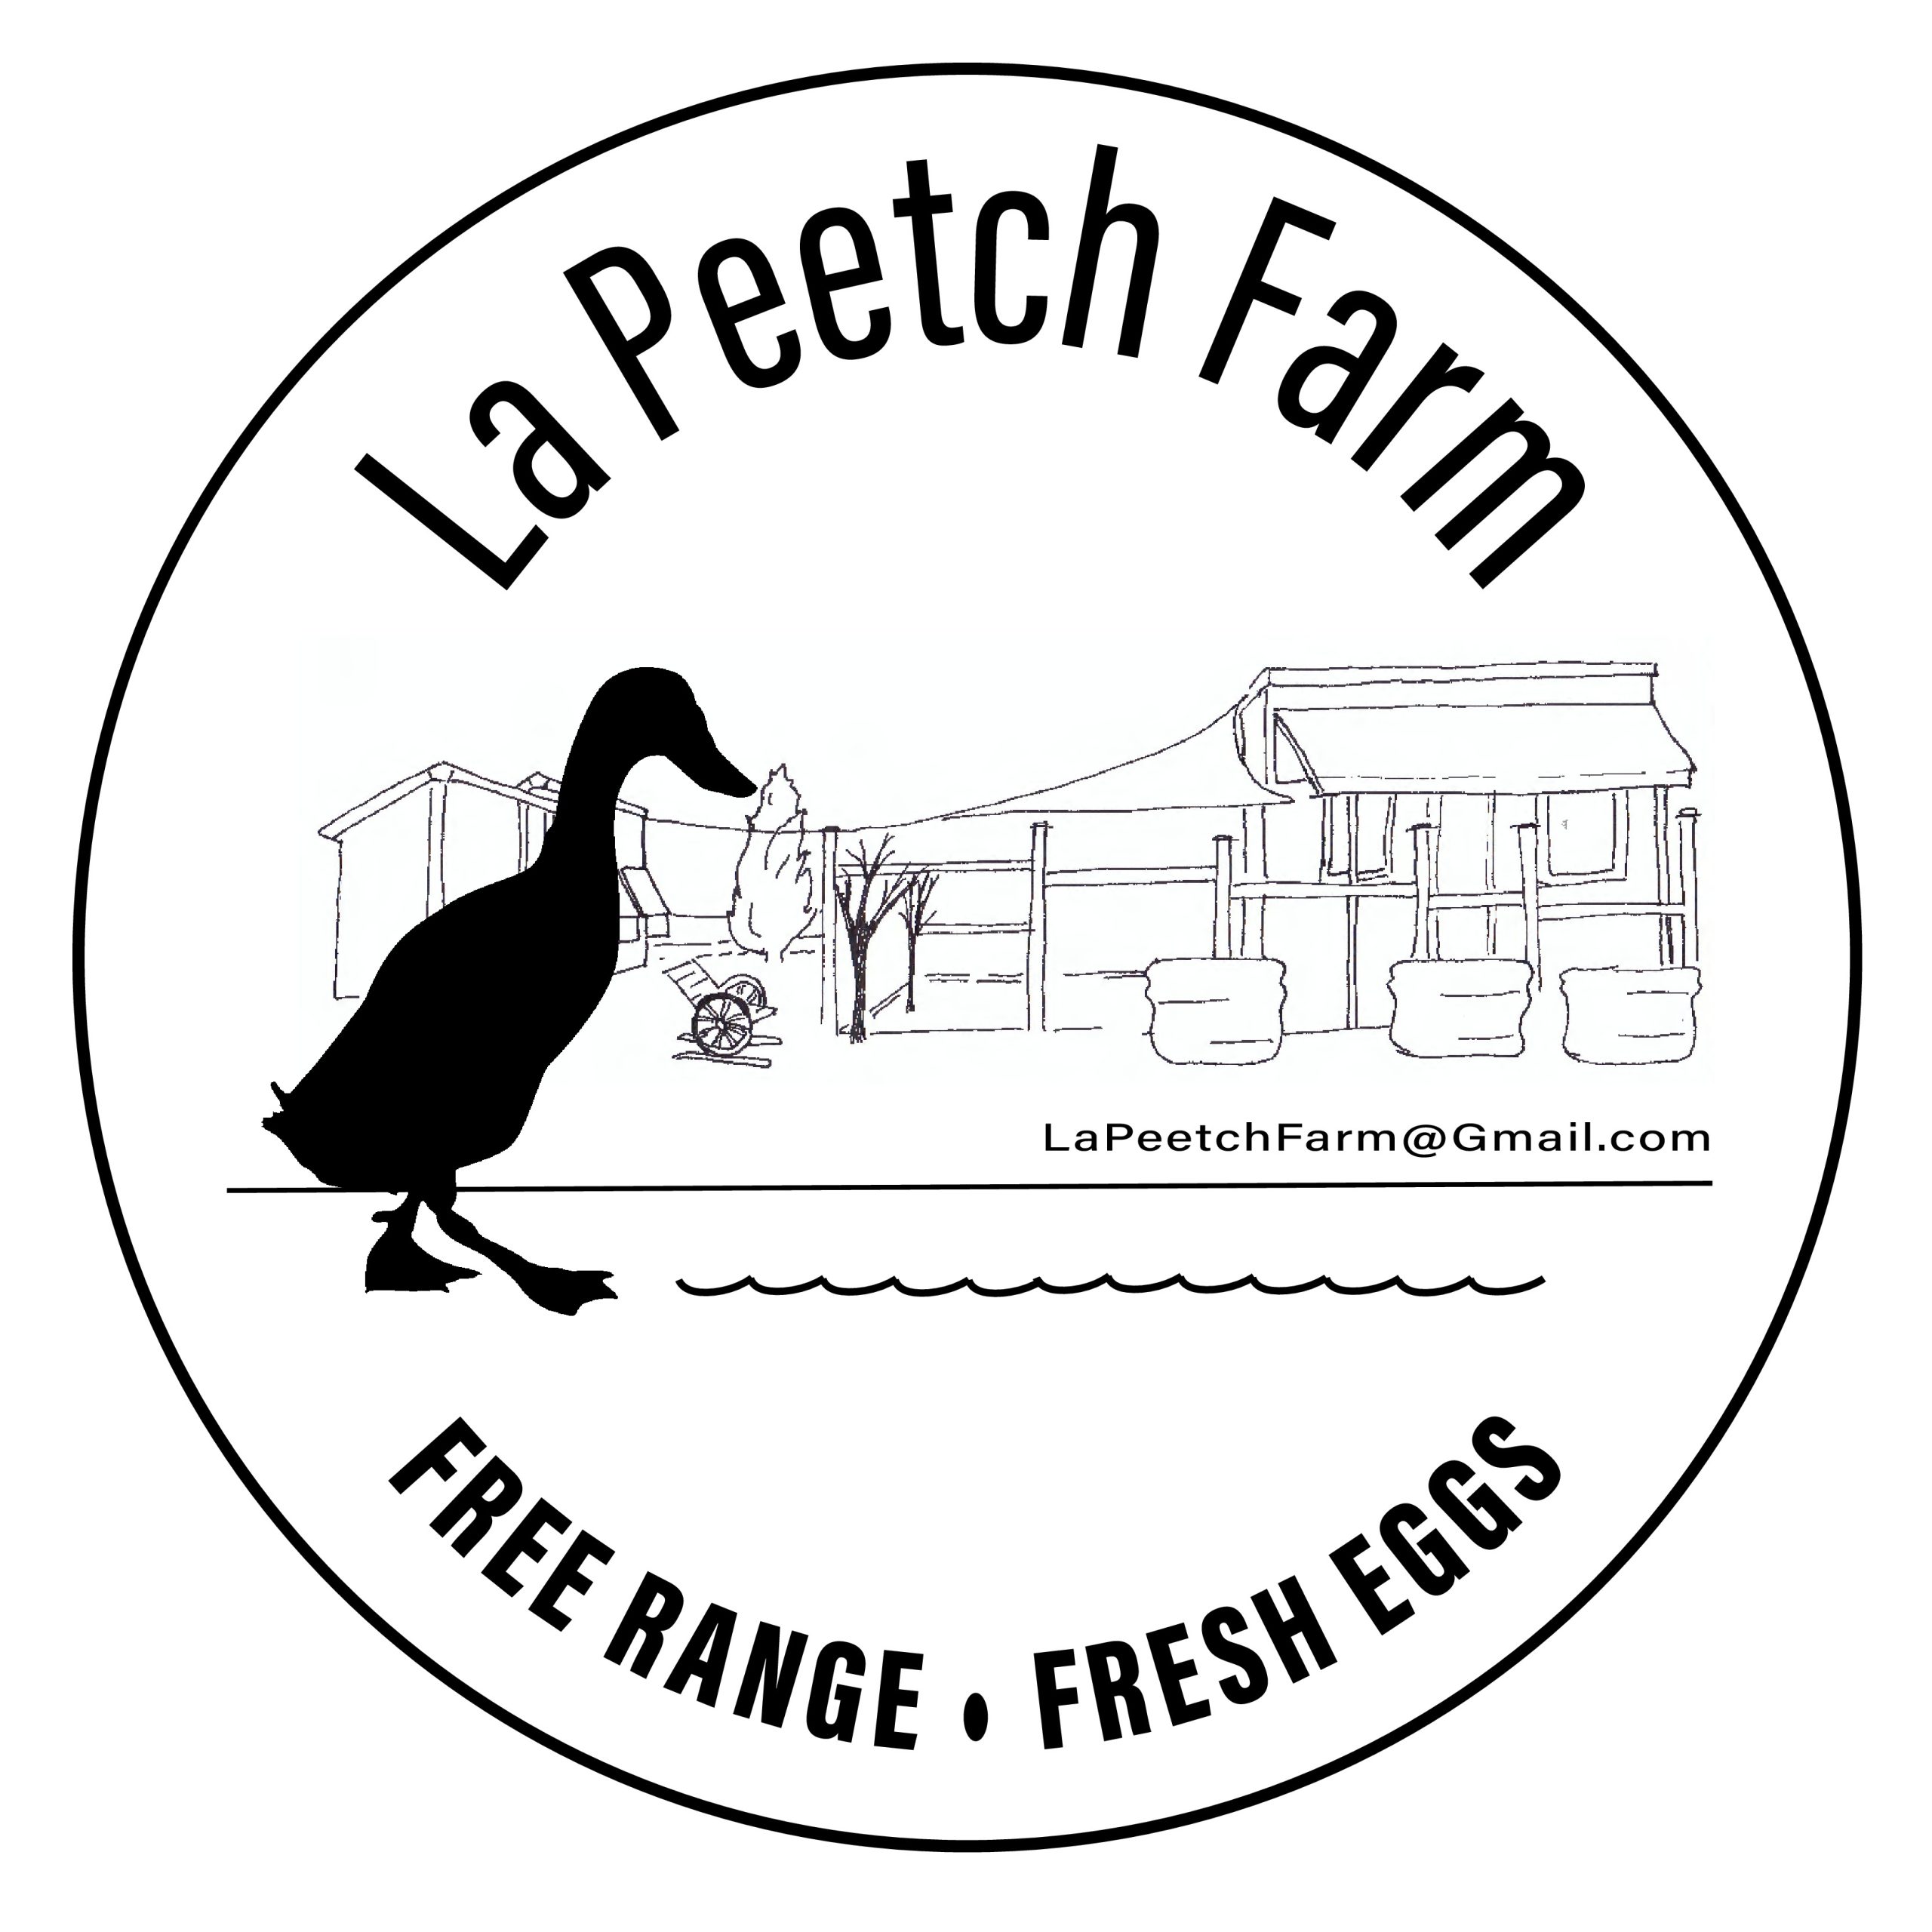 La Peetch Farm